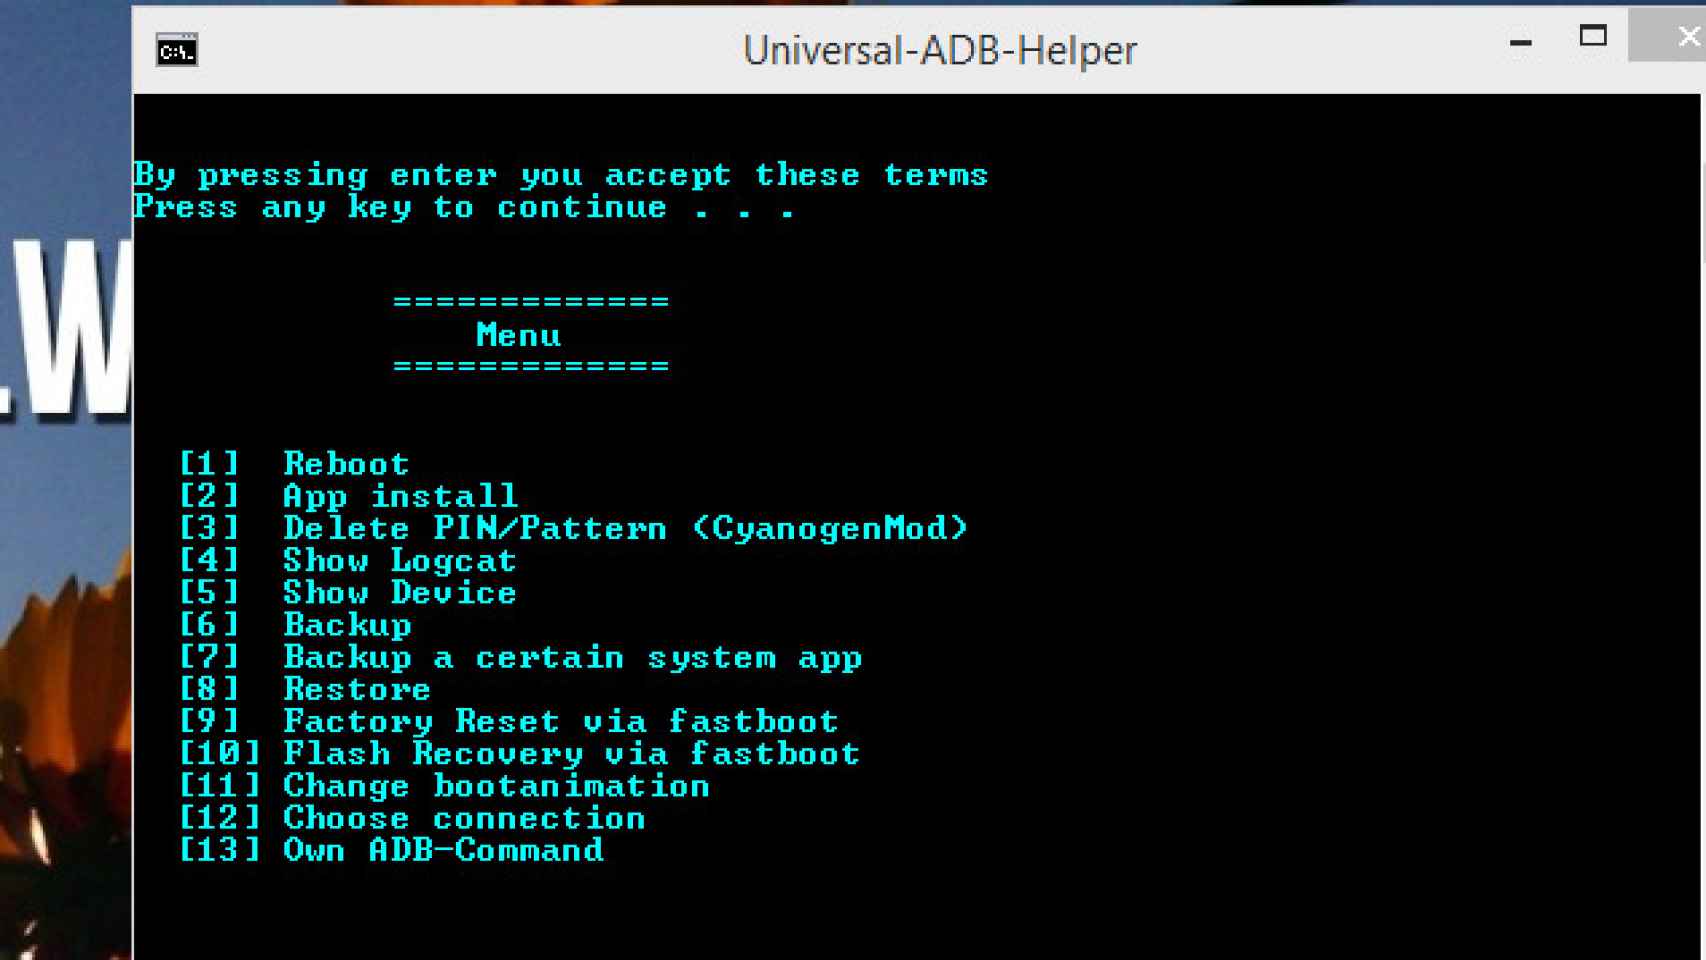 ejecuta el comando «»adb shell«» en la ventana de comandos o terminal. Esto te llevará al shell de tu dispositivo Android.